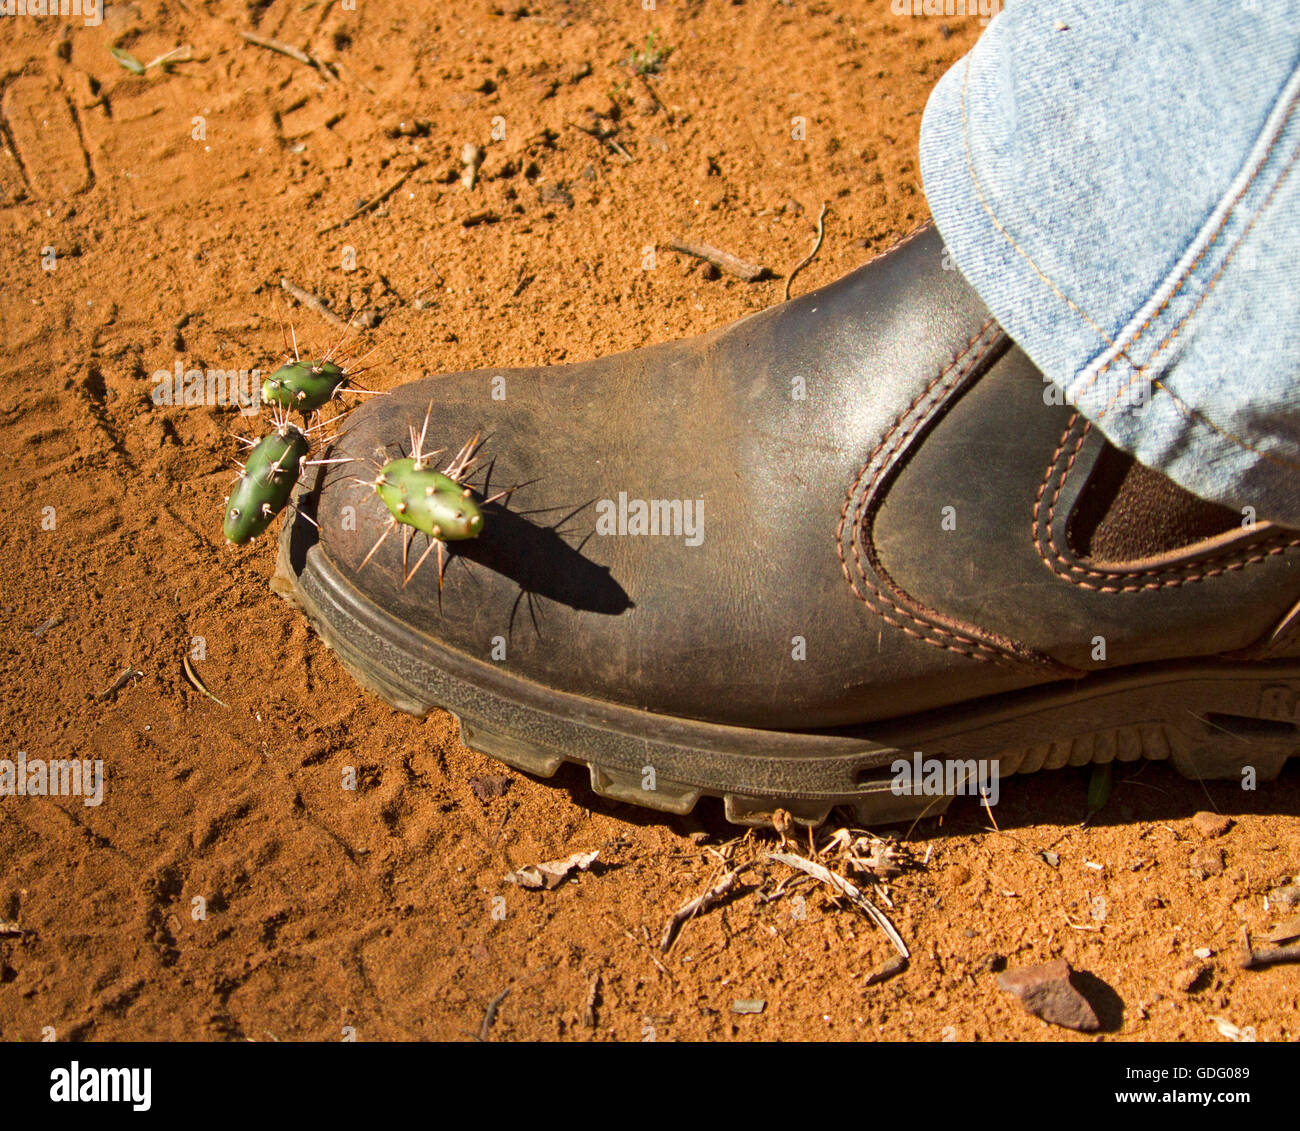 Segmentos de nopal / cactus Opuntia bota de cuero pegada en el pie del hombre, el método natural de propagación de maleza invasora, un declarado especies plaga Foto de stock